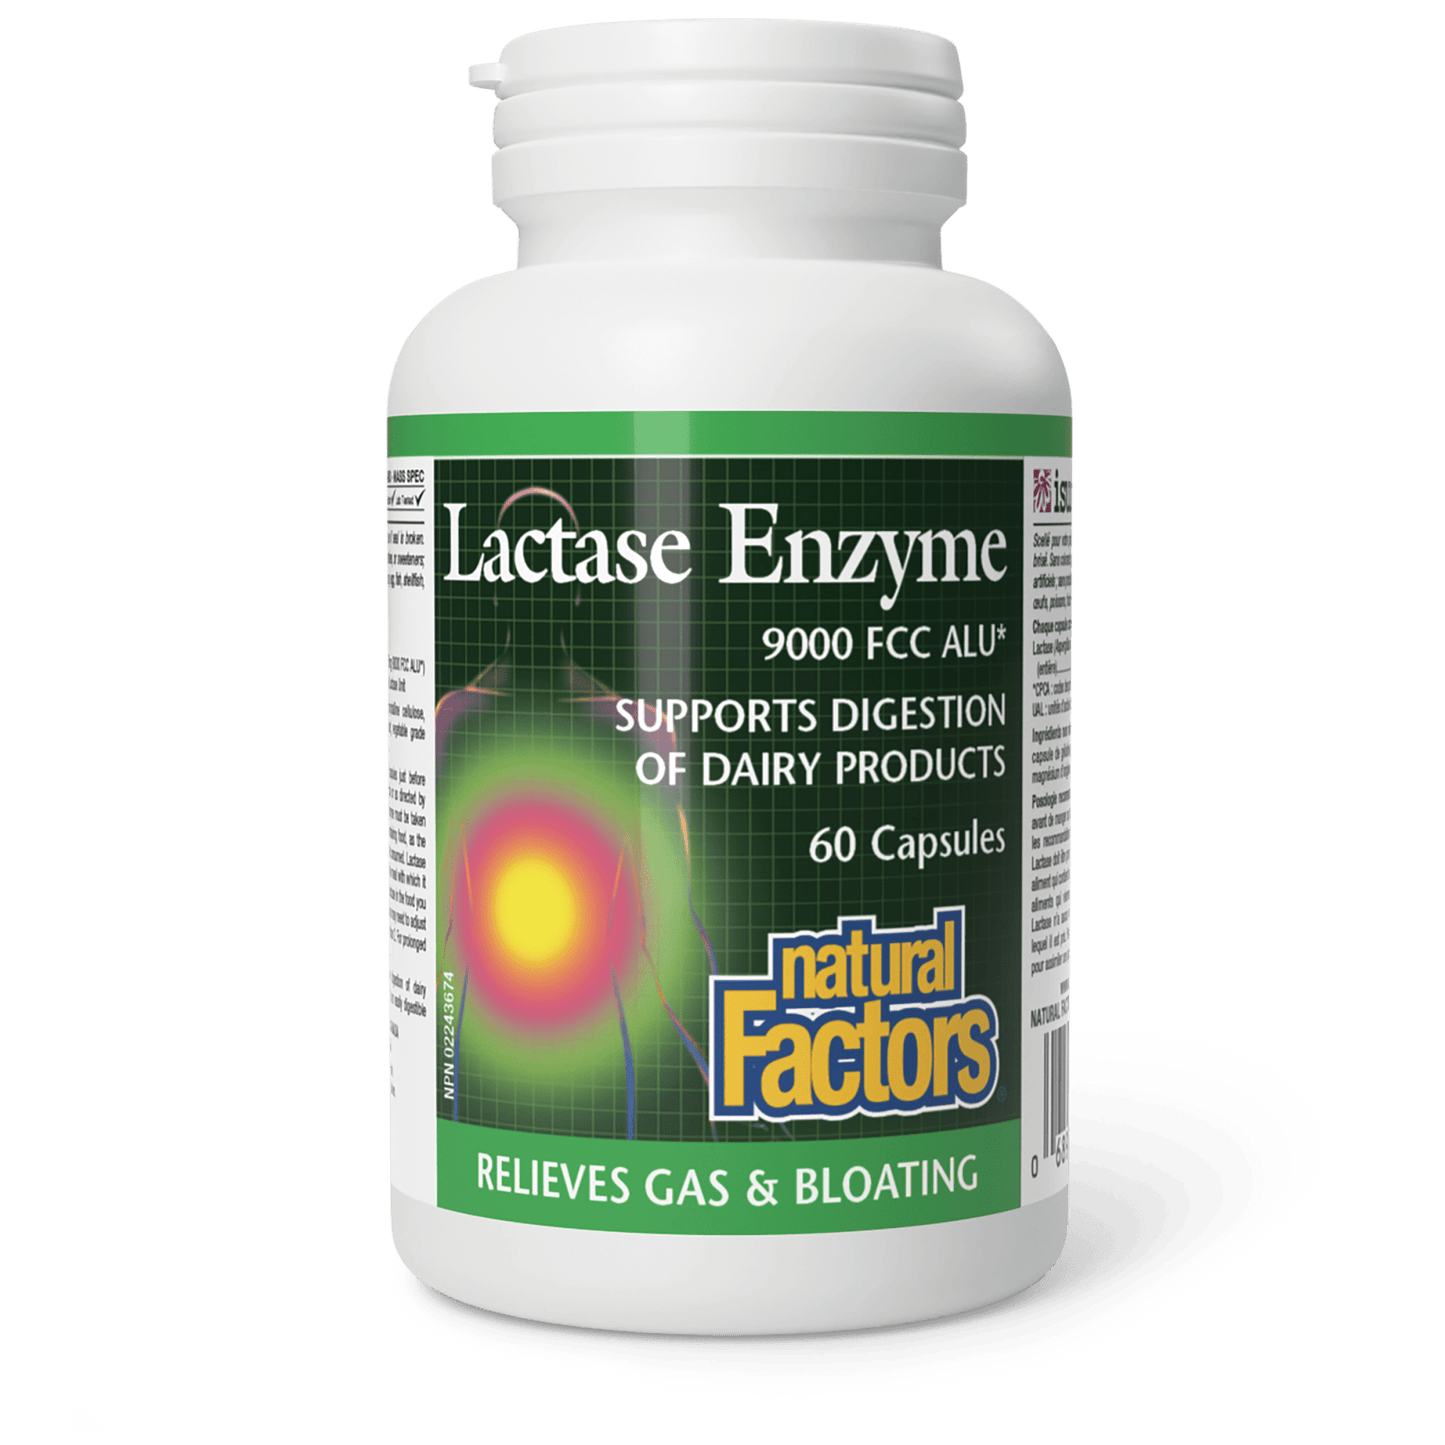 Lactase Enzyme, Natural Factors|v|image|1740